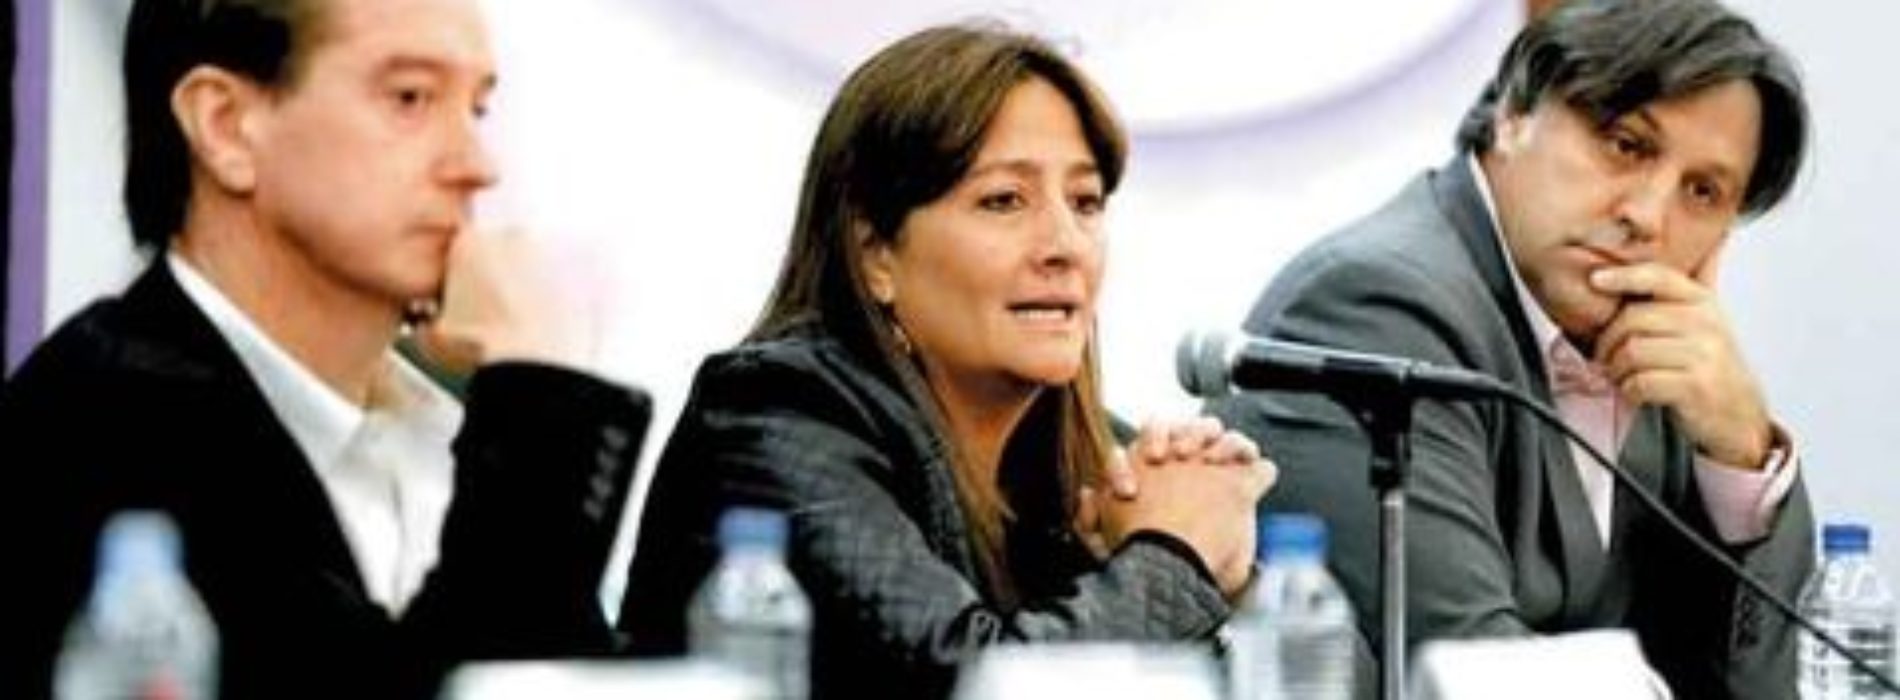 Expertos y PGR discrepan otra vez sobre caso Iguala